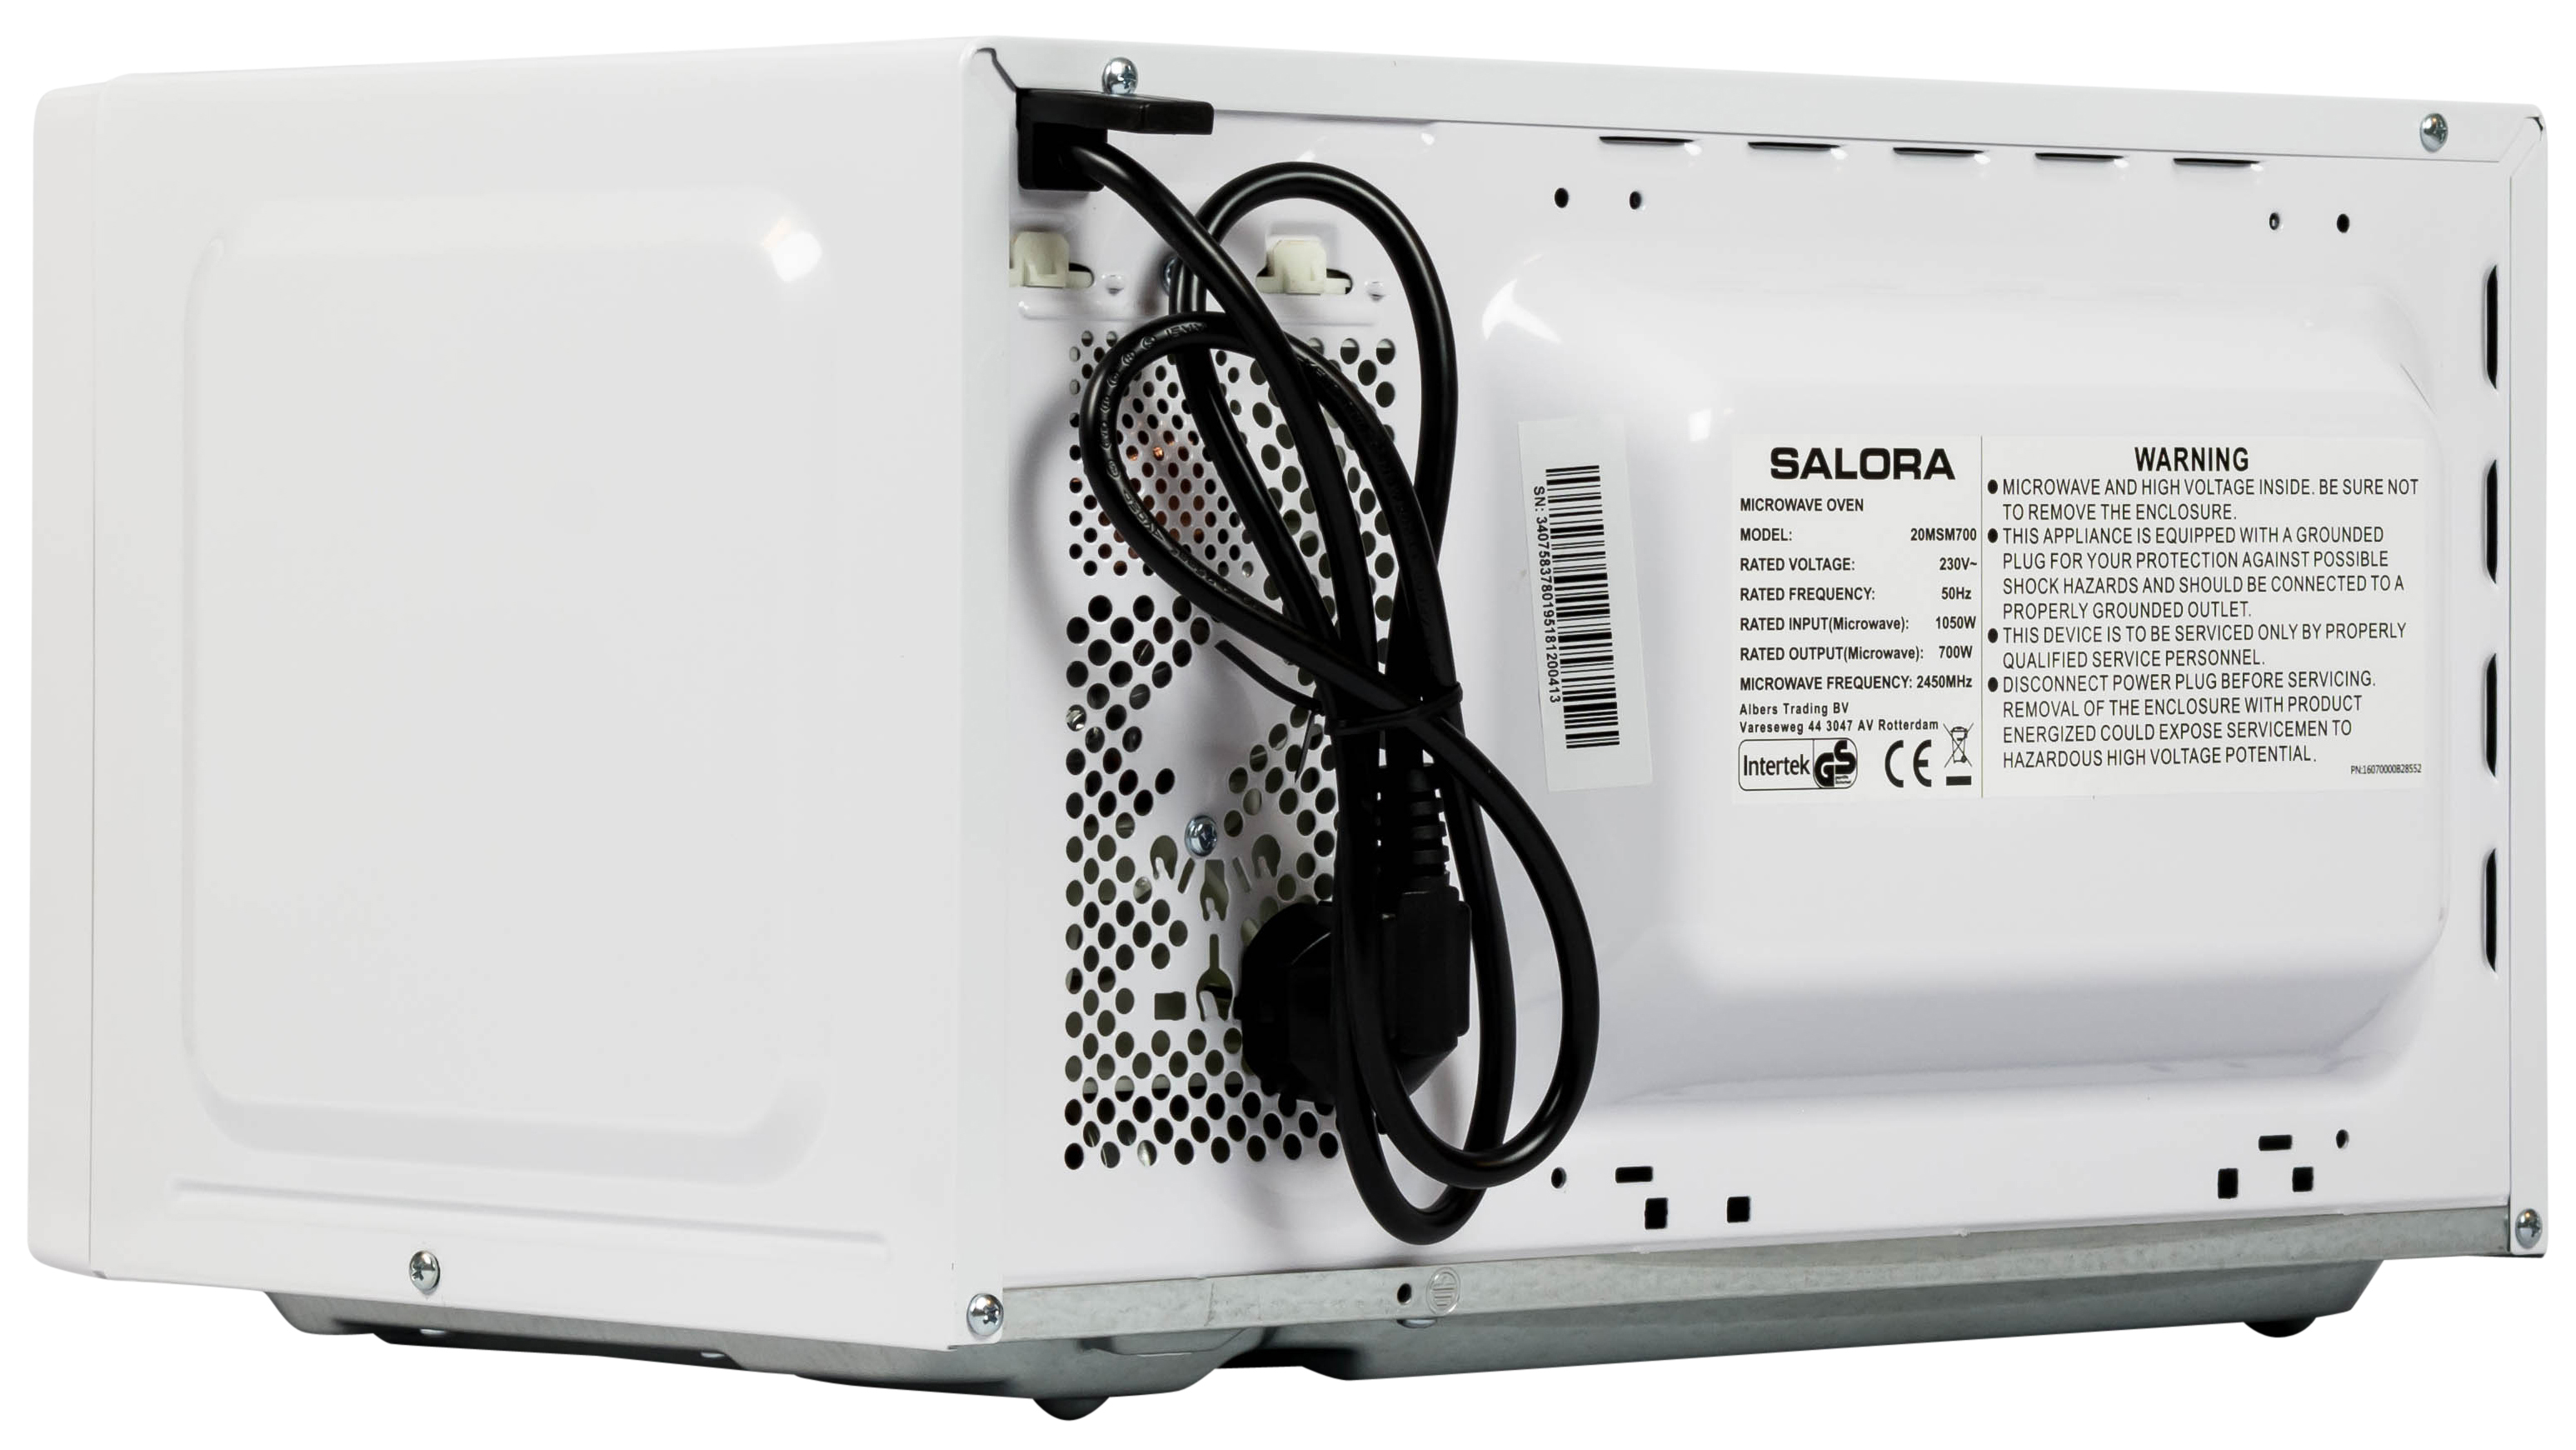 SALORA 20MSM700 Mikrowelle (700 Watt)